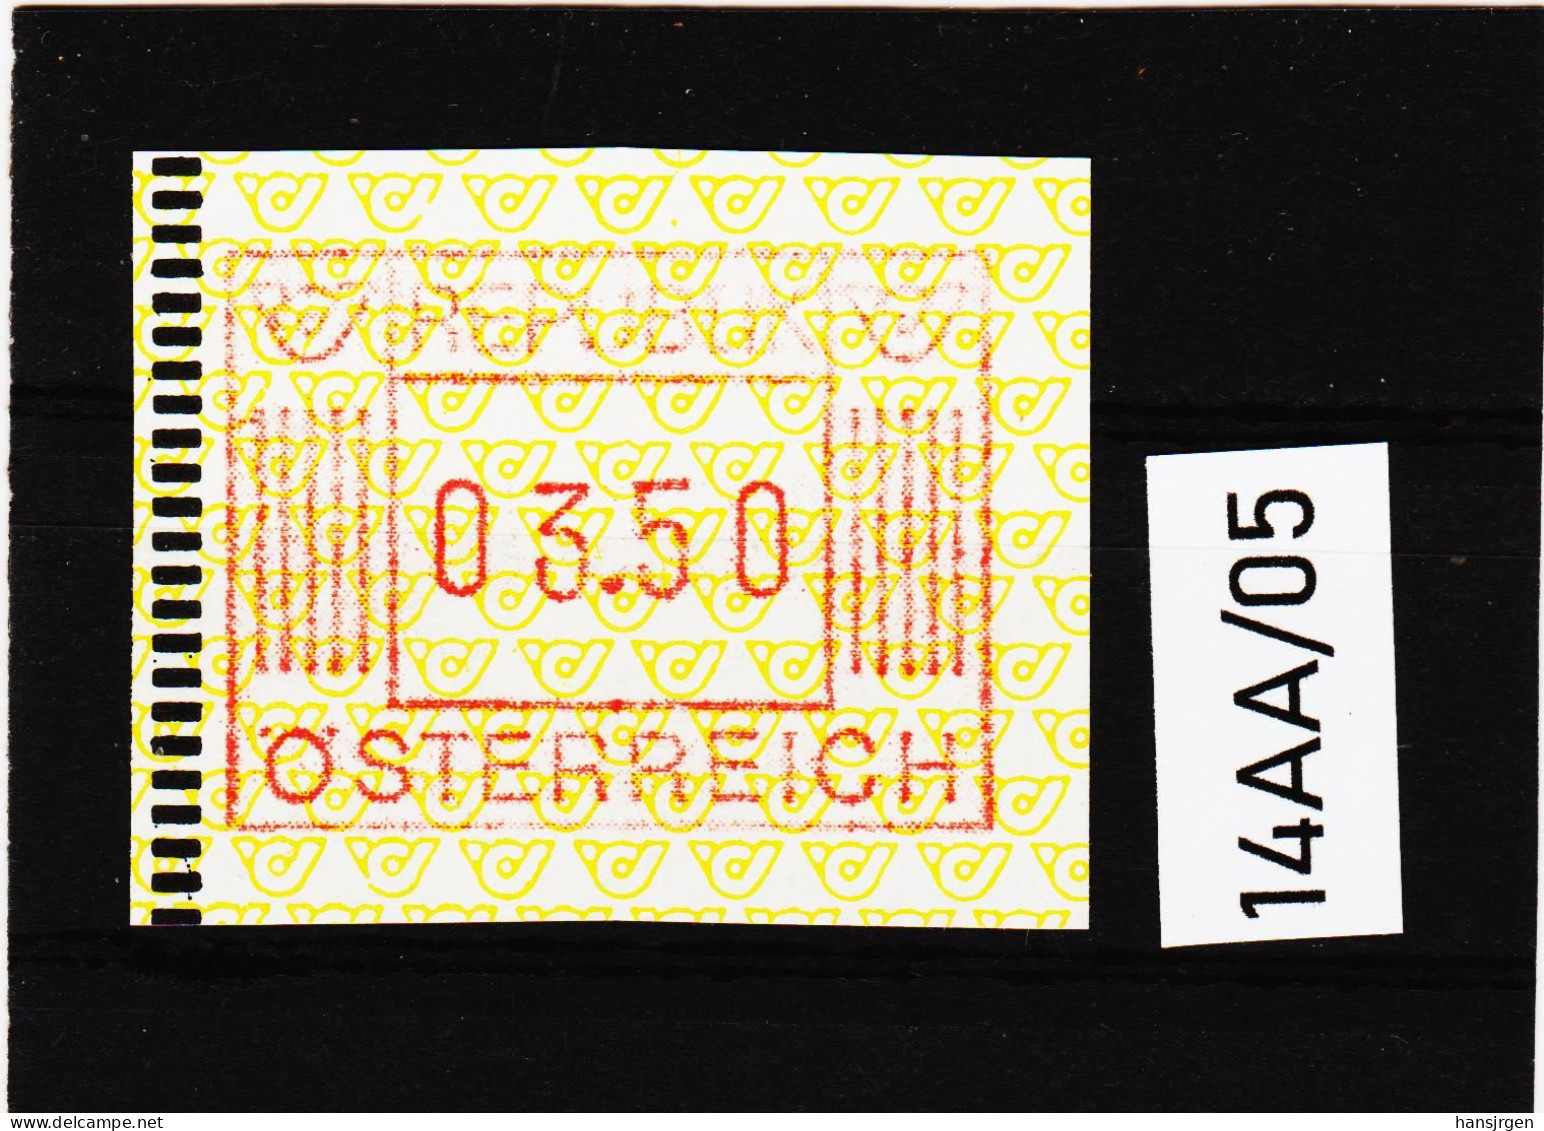 14AA/05 ÖSTERREICH 1983 AUTOMATENMARKEN 1. AUSGABE  3,50 Schilling   ** Postfrisch - Machine Labels [ATM]